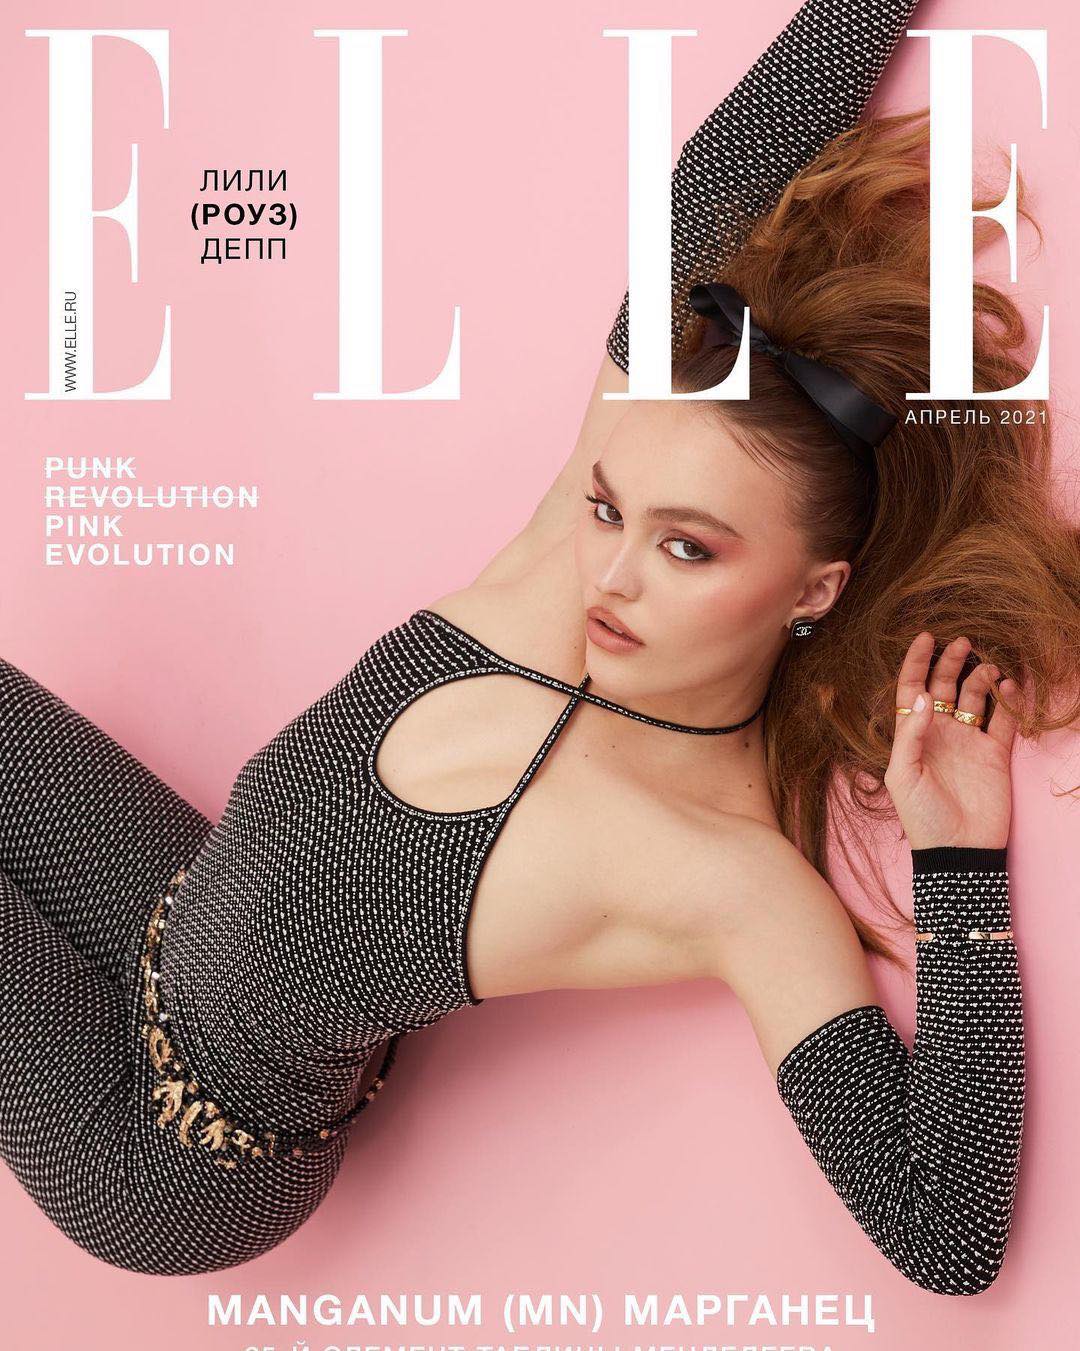 Lily-Rose Depp trở thành gương mặt trang bìa số tháng 4 của tạp chí Elle Nga